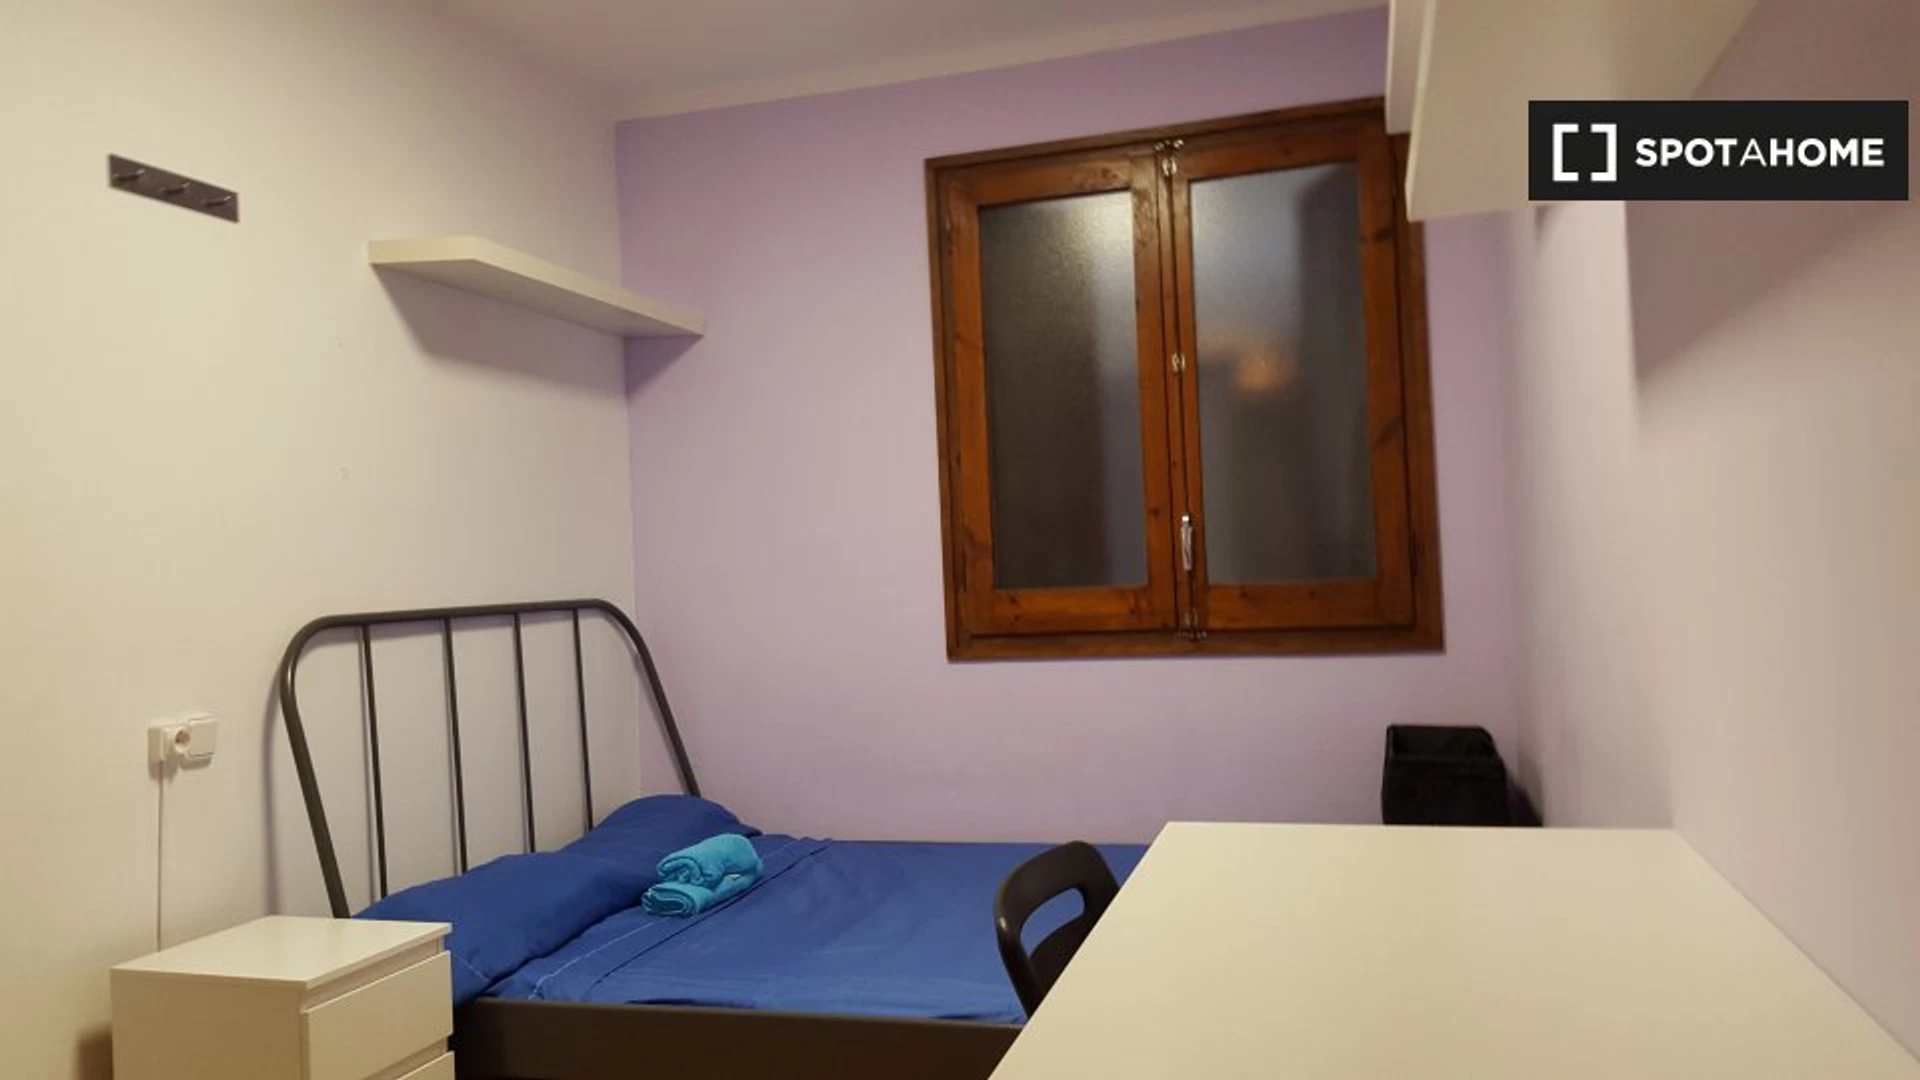 Alquiler de habitaciones por meses en Mataró